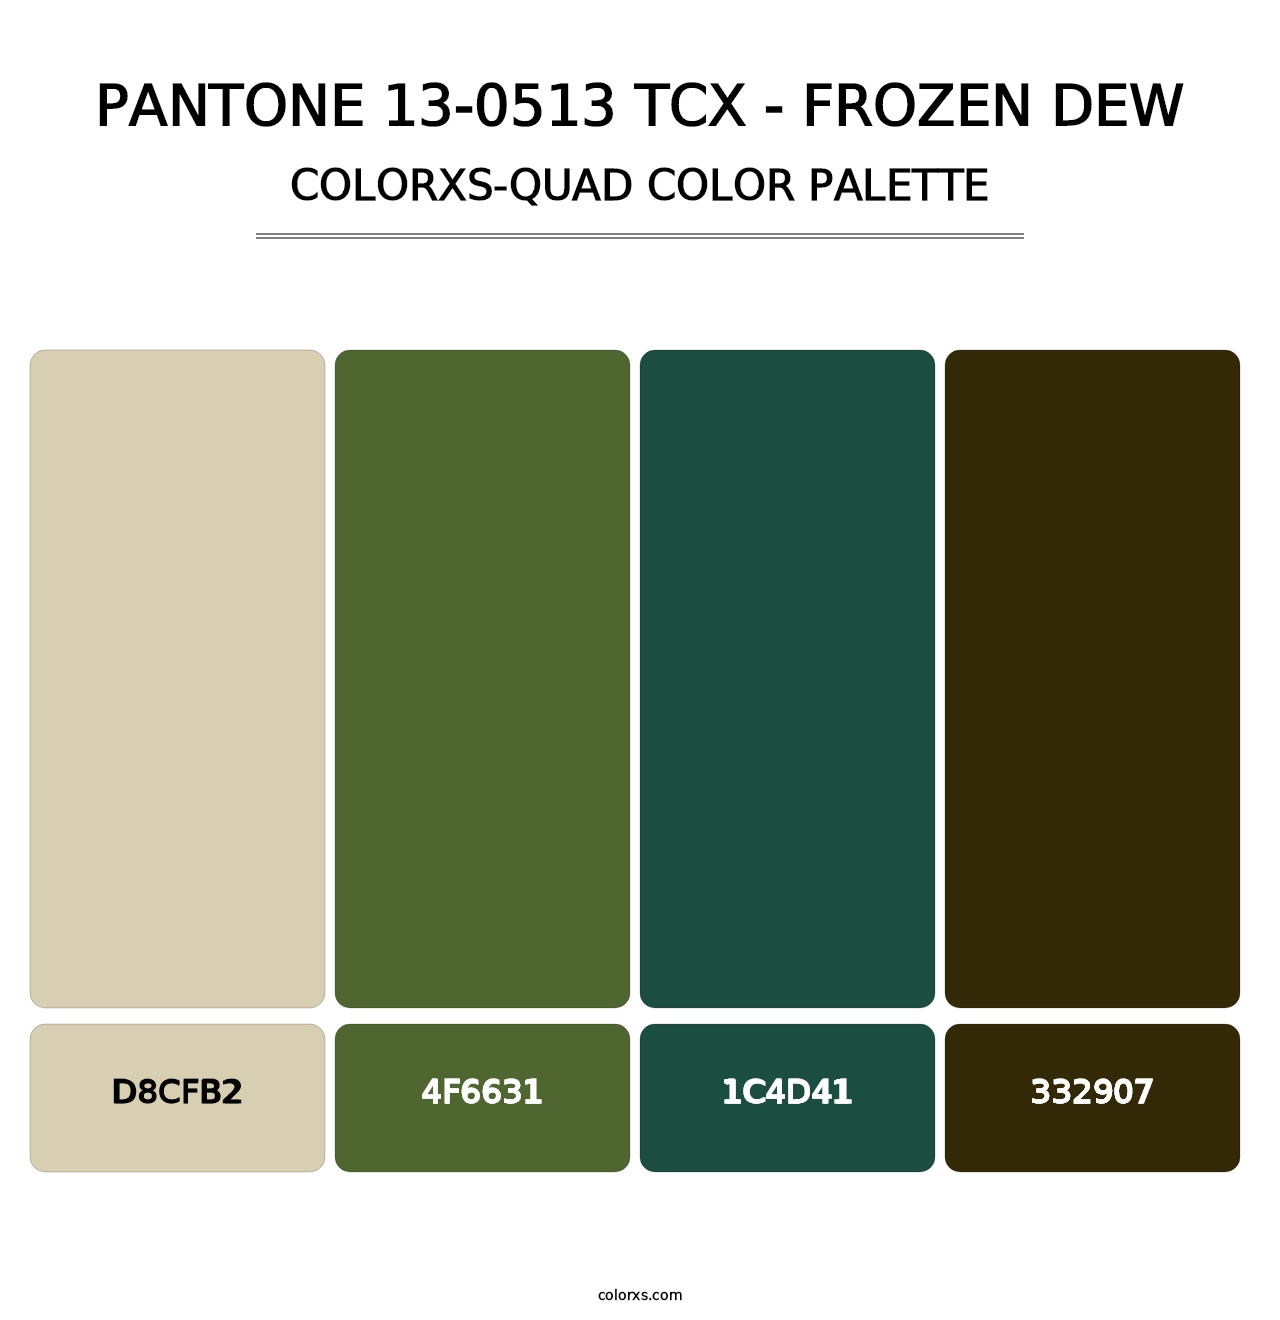 PANTONE 13-0513 TCX - Frozen Dew - Colorxs Quad Palette